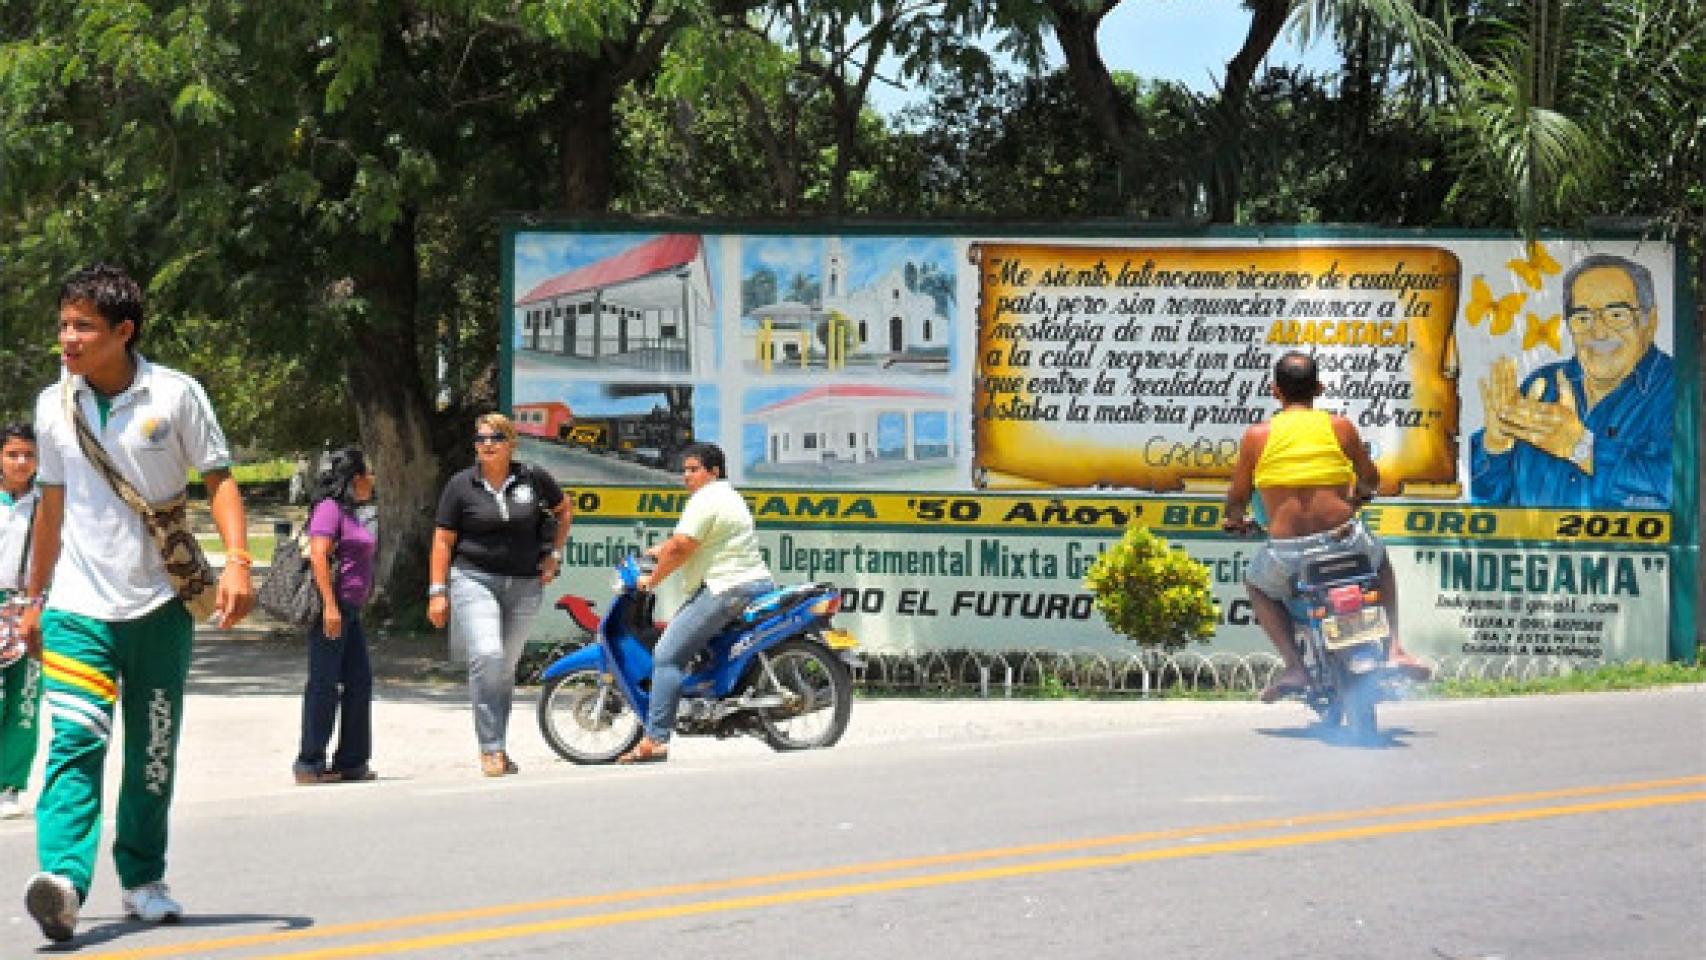 Mural dedicado a García Márquez en su pueblo natal, Aracataca, que inspiró Macondo. Foto: Tim Buendía